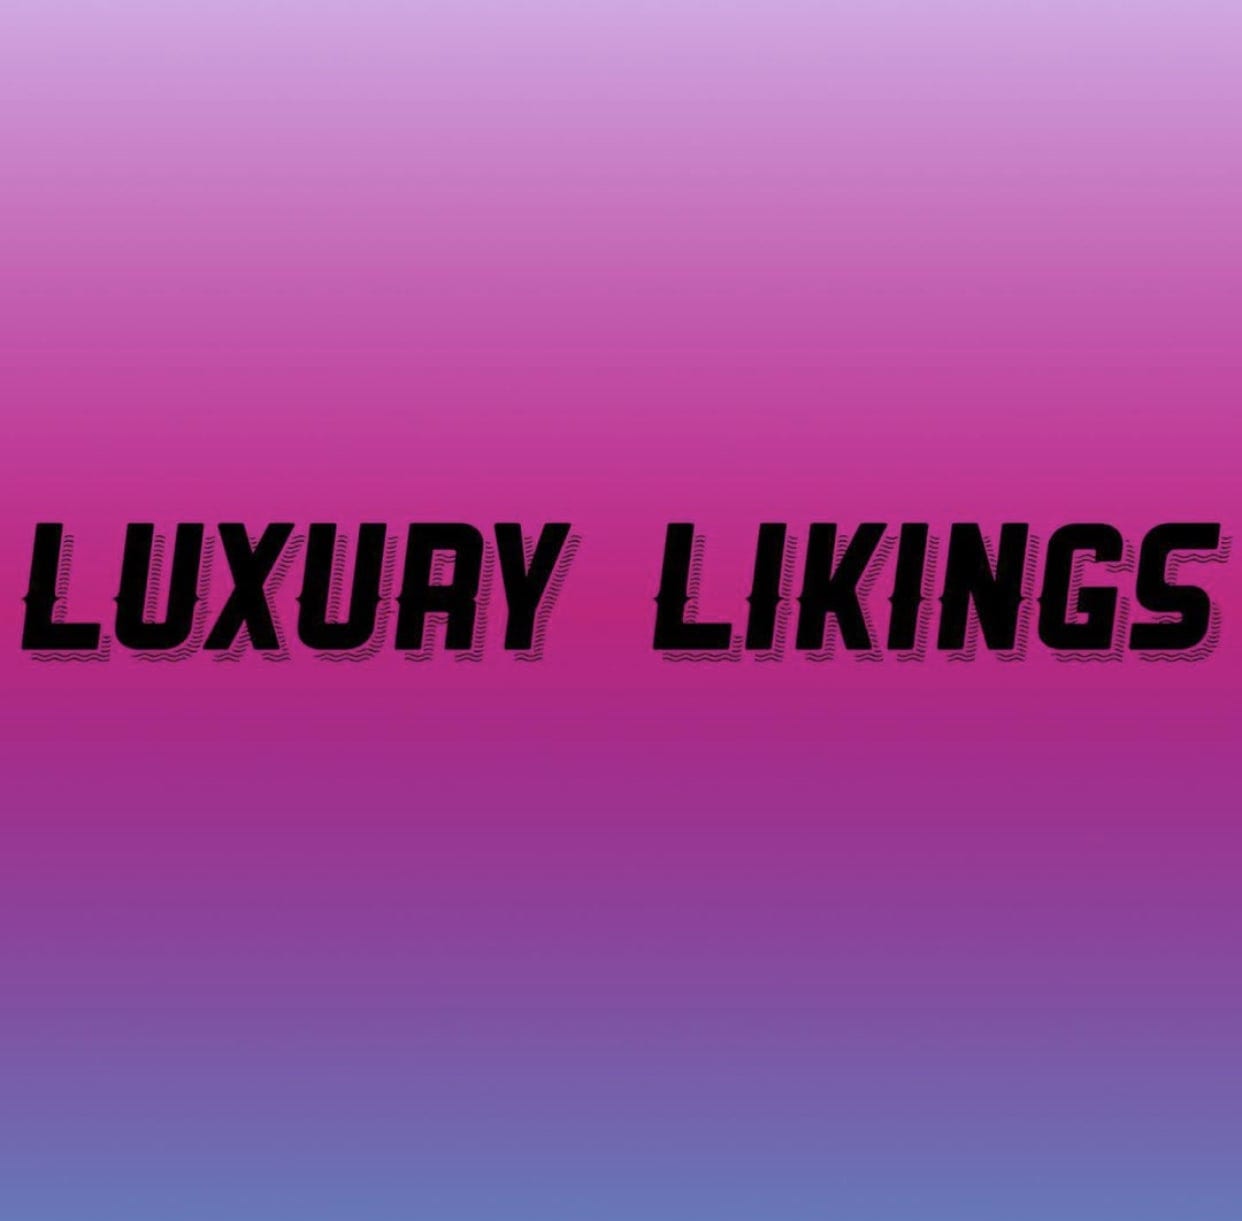 Luxury Likings